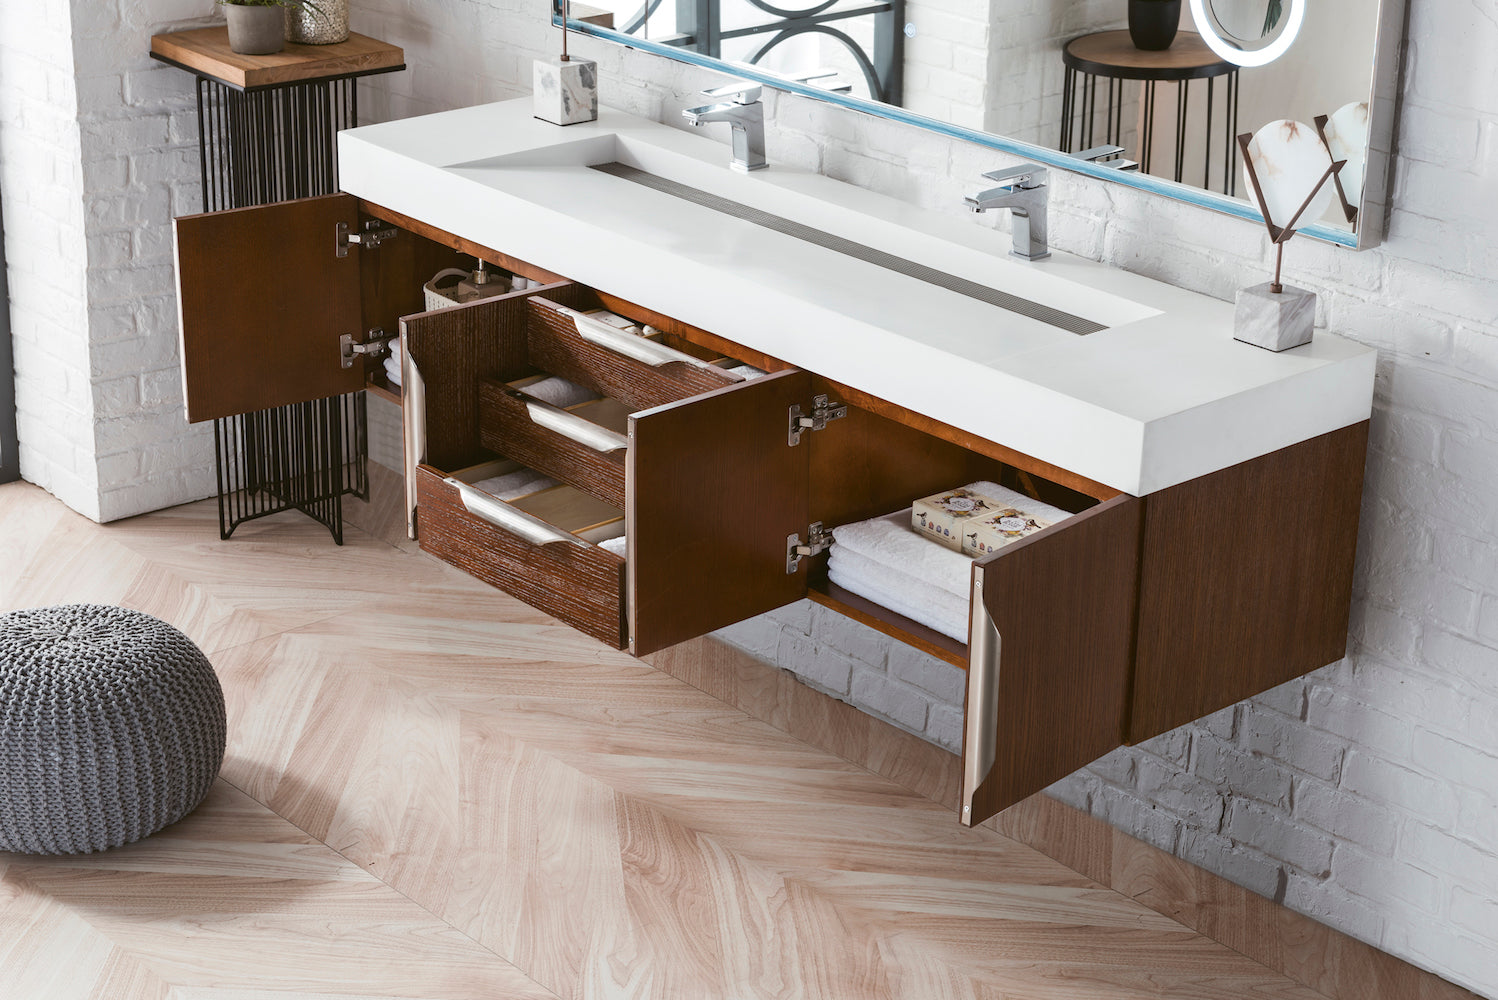 72" Mercer Island Double Sink Bathroom Vanity, Coffee Oak w/ Brushed Nickel